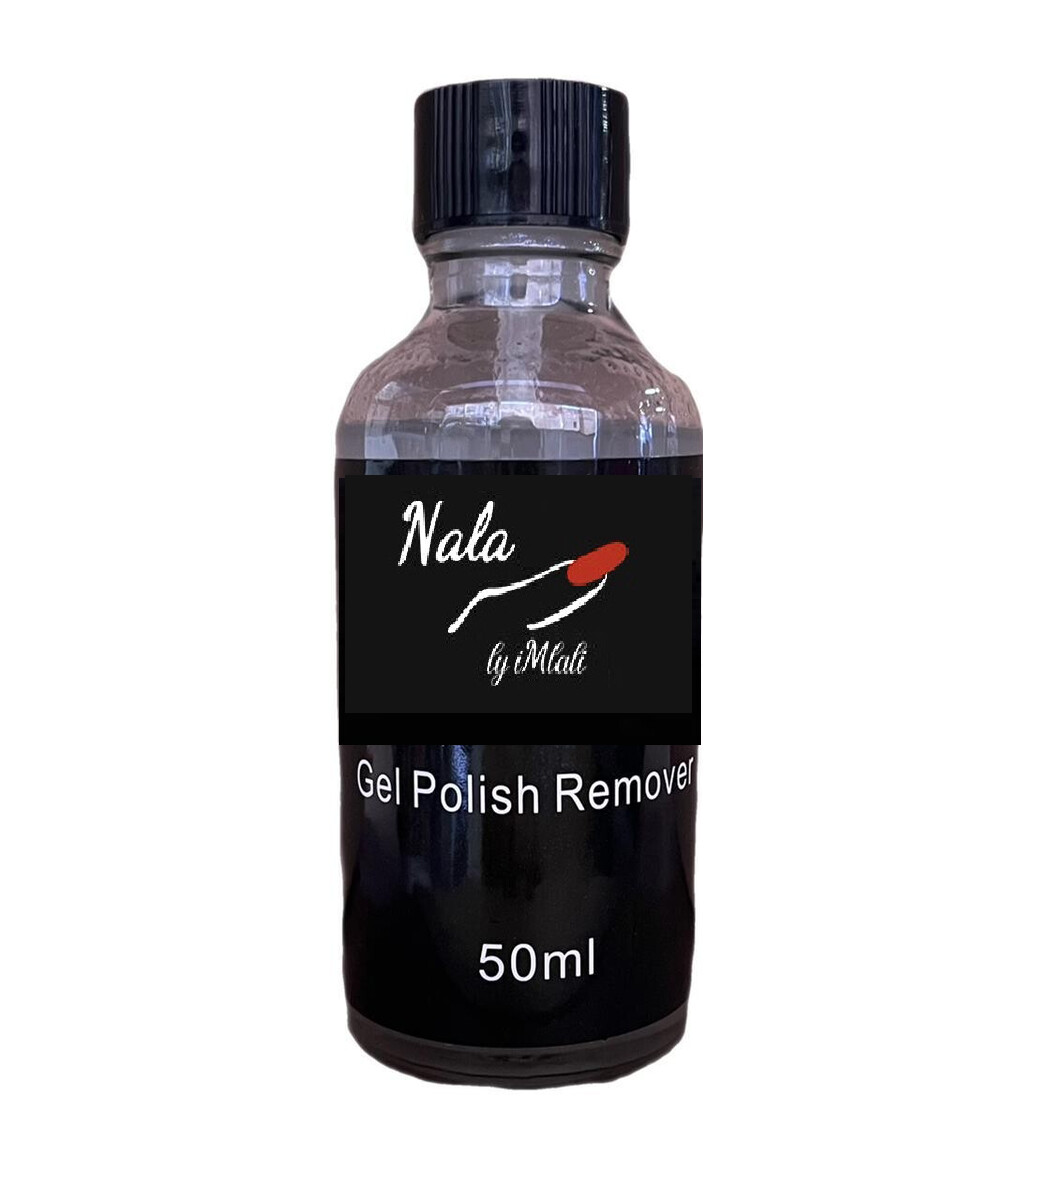 Nala by iMbali 50 ml Gel Polish Remover